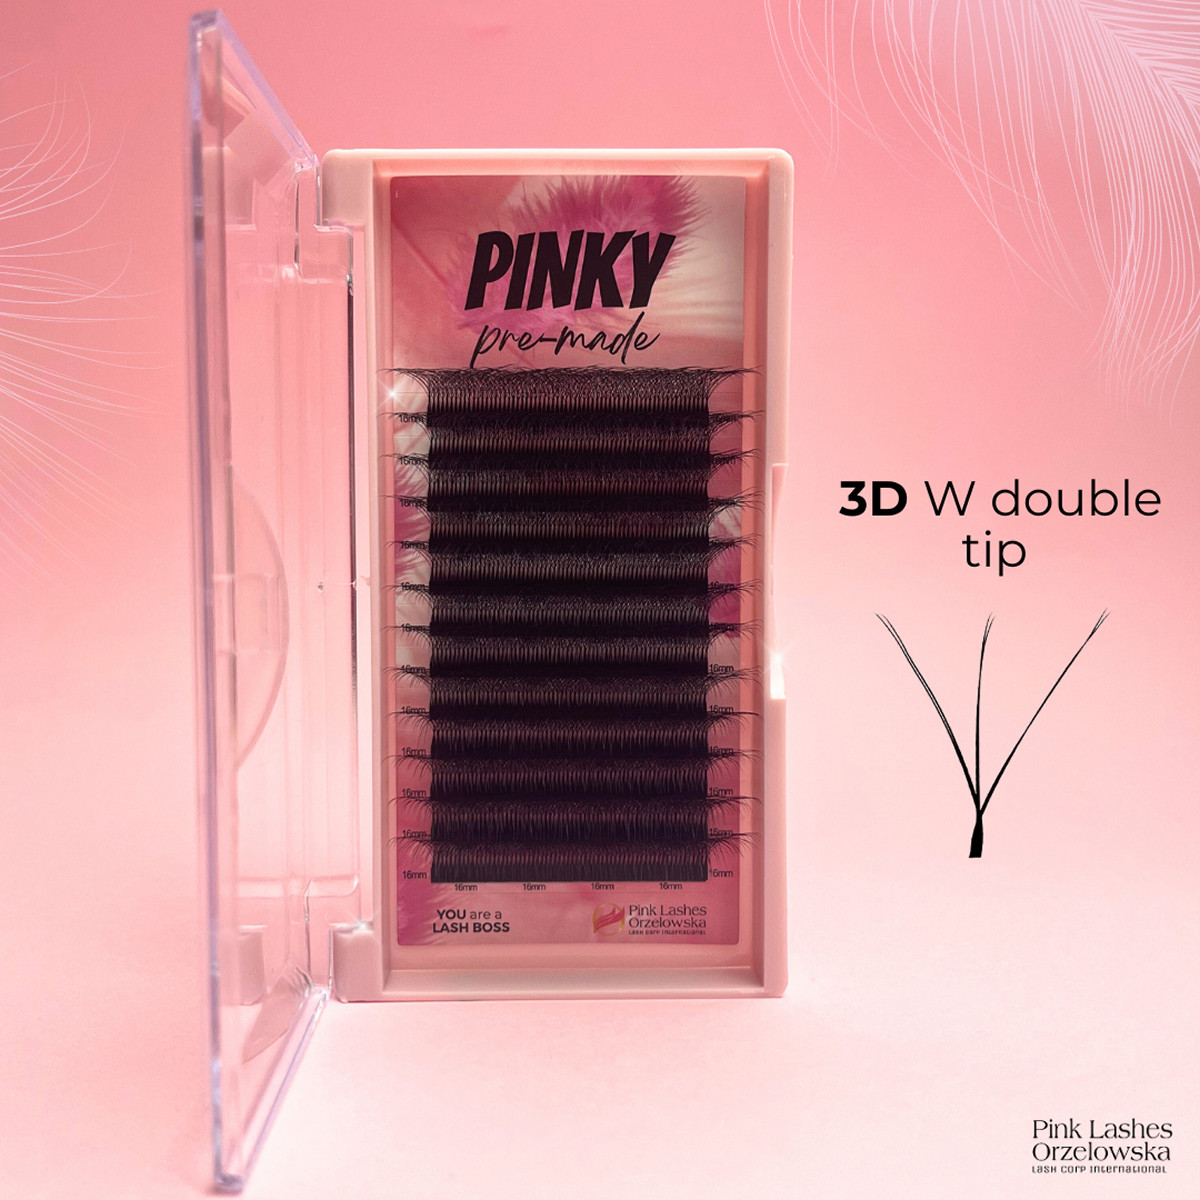 3D W PINKY, Curl D, premade - ciglia finte pronte all'uso, volume rapido